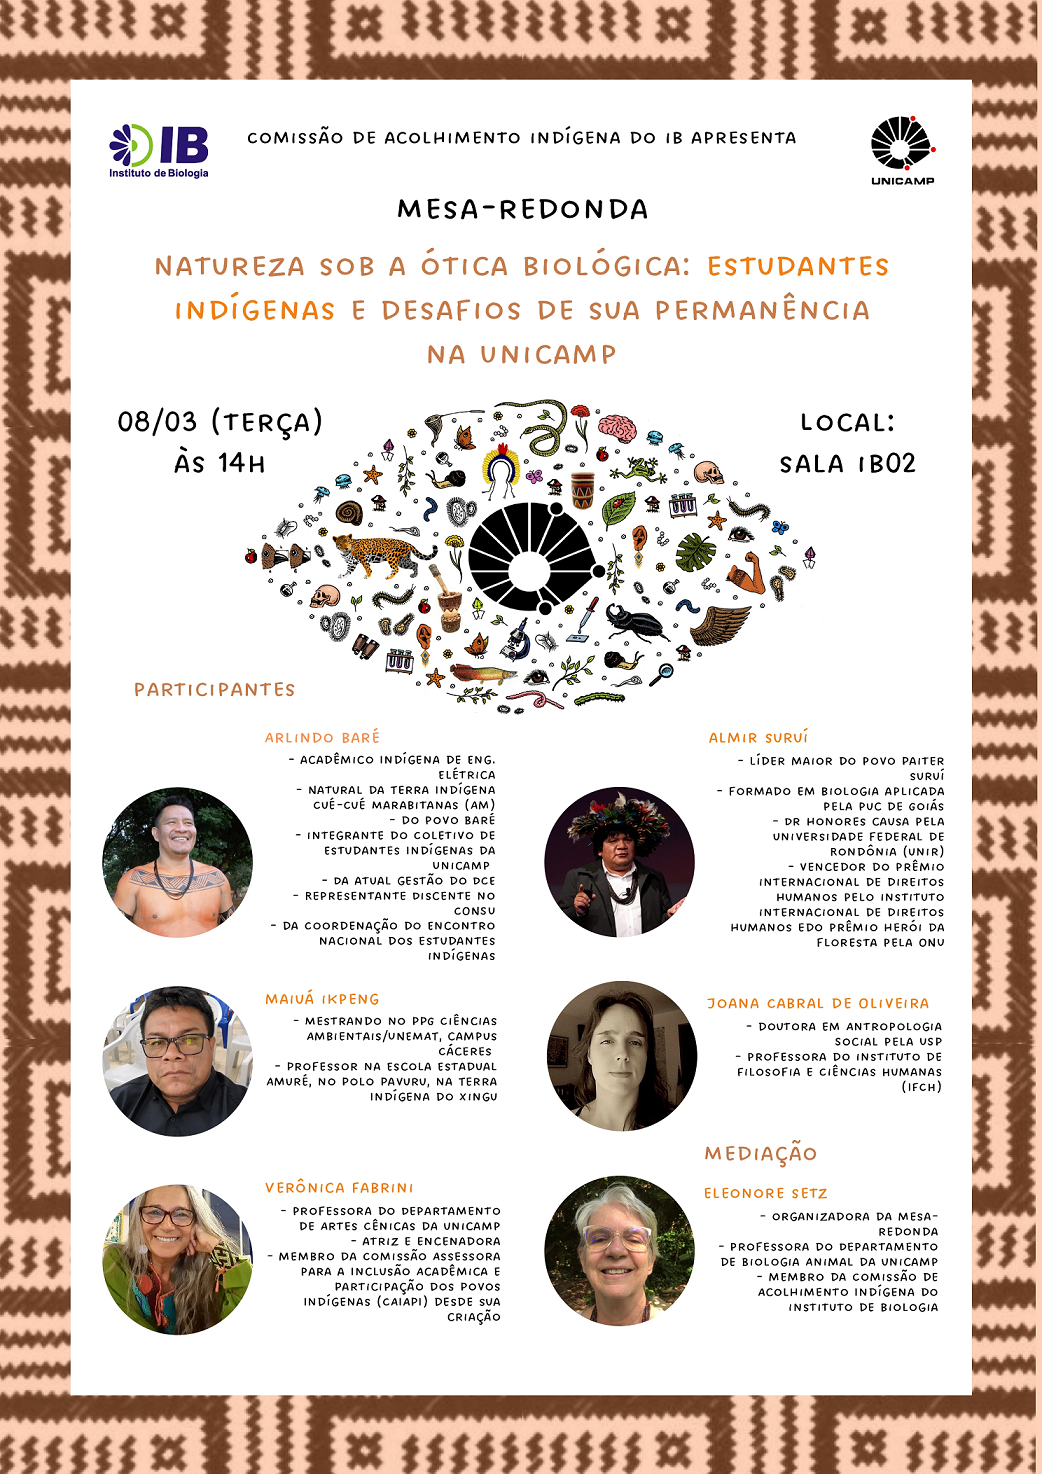 Natureza sob a ótica biológica: estudantes indígenas e desafios de sua permanência na Unicamp